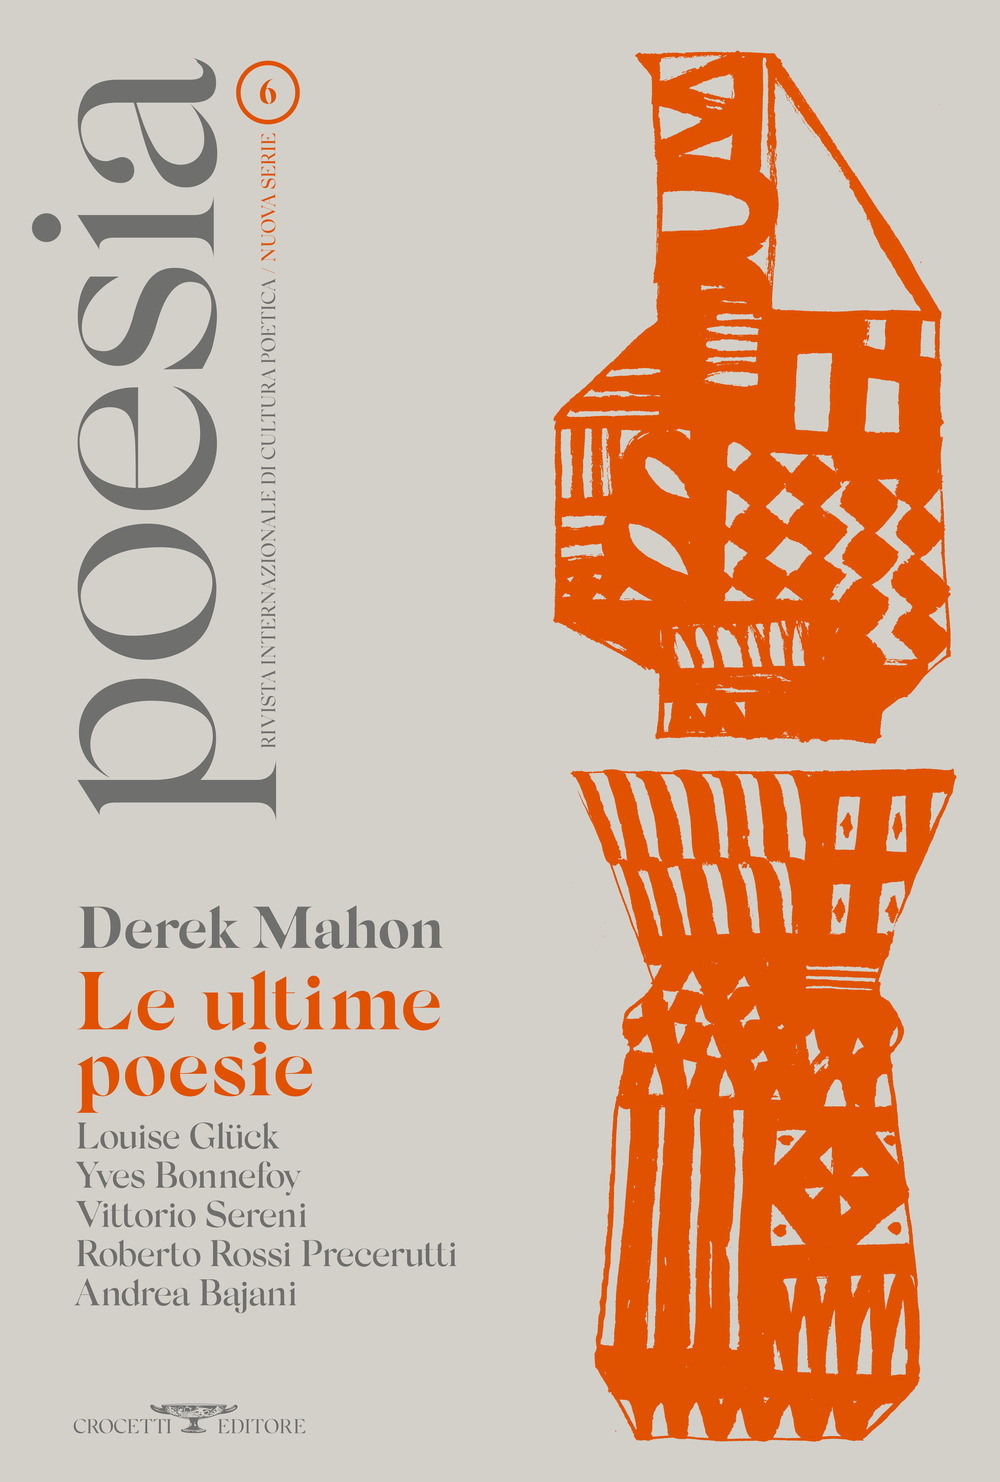 Poesia. Rivista internazionale di cultura poetica. Nuova serie. Vol. 6: Derek Mahon. Le ultime poesie